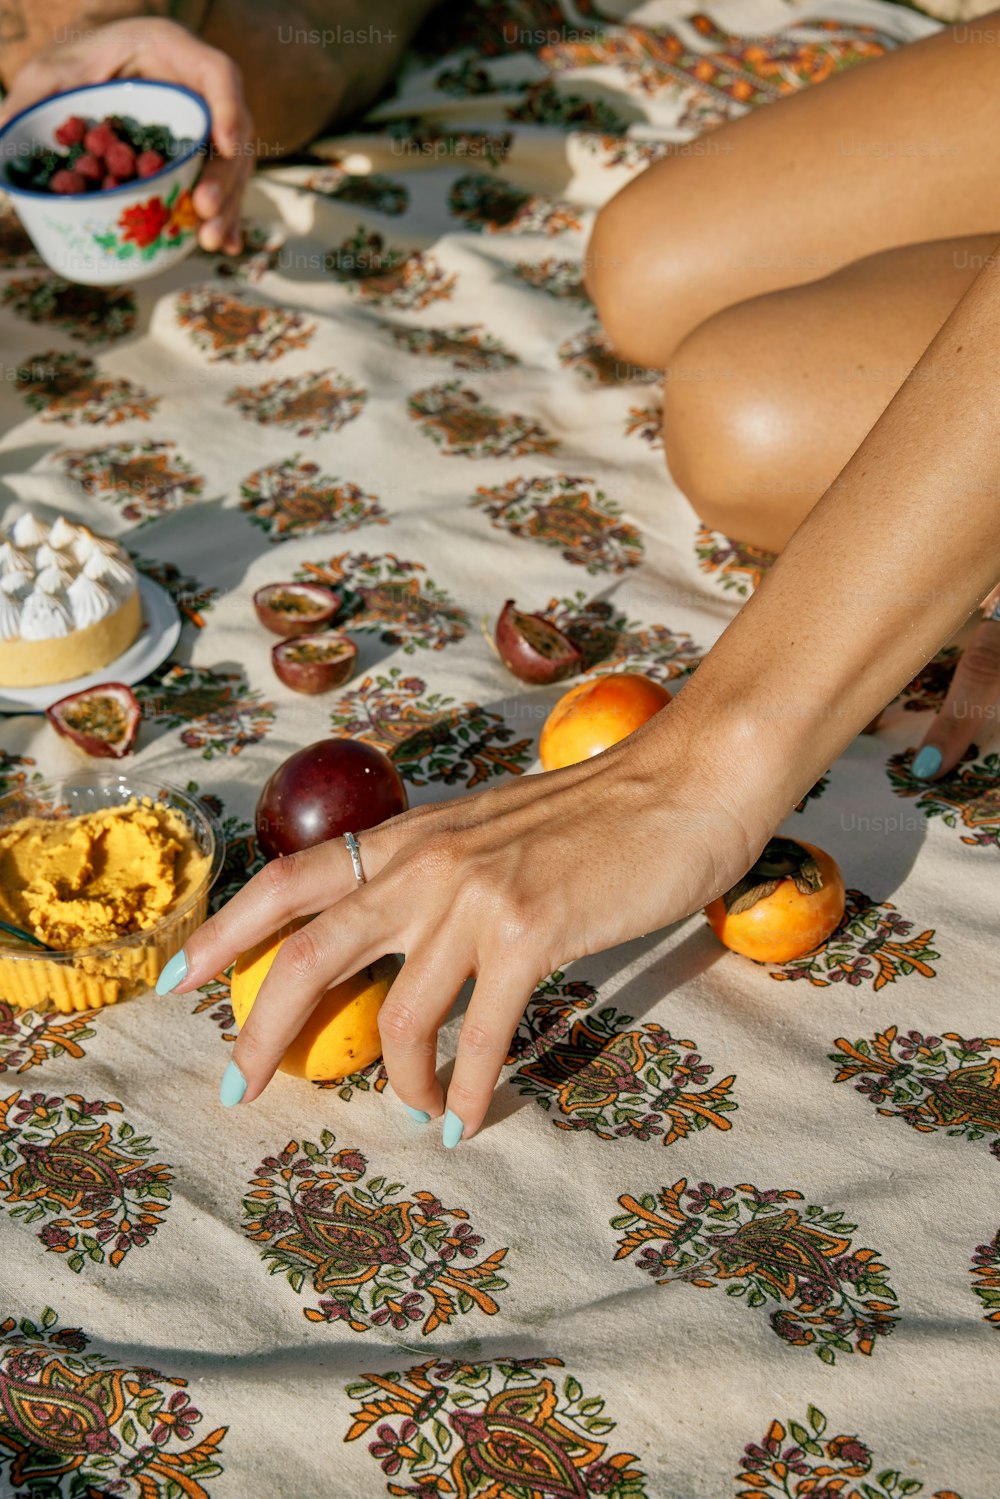 una donna seduta su un letto con una ciotola di frutta